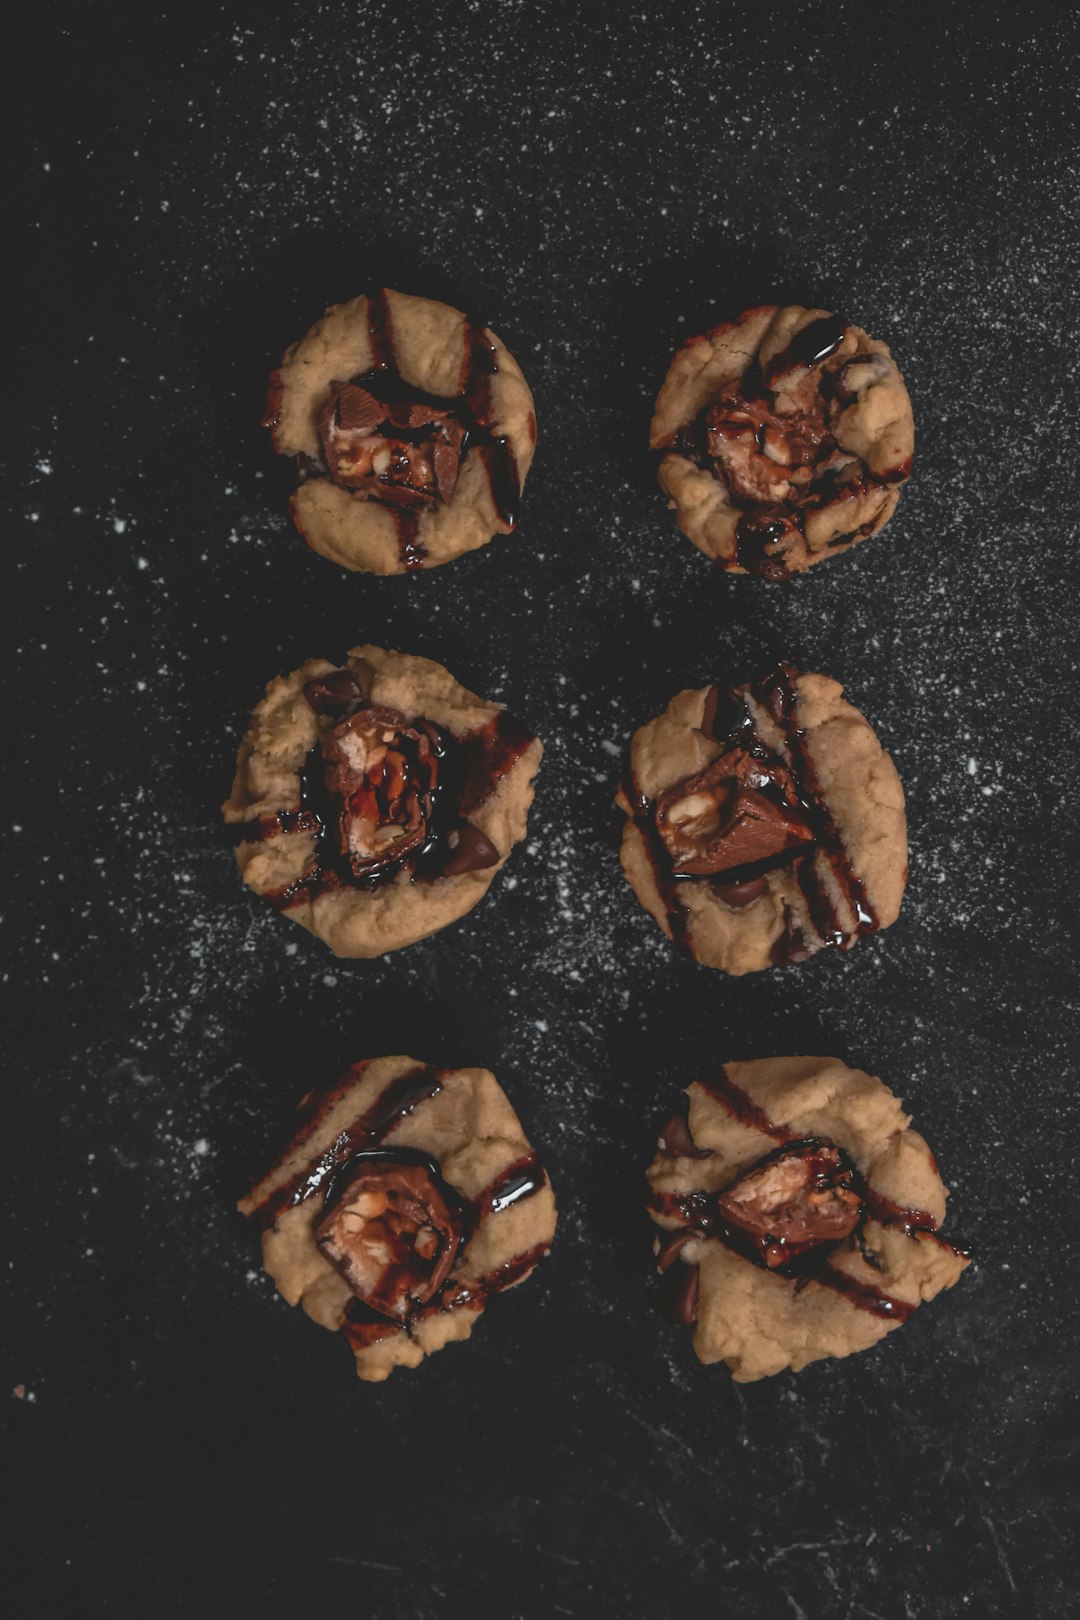 brown cookies on black surface